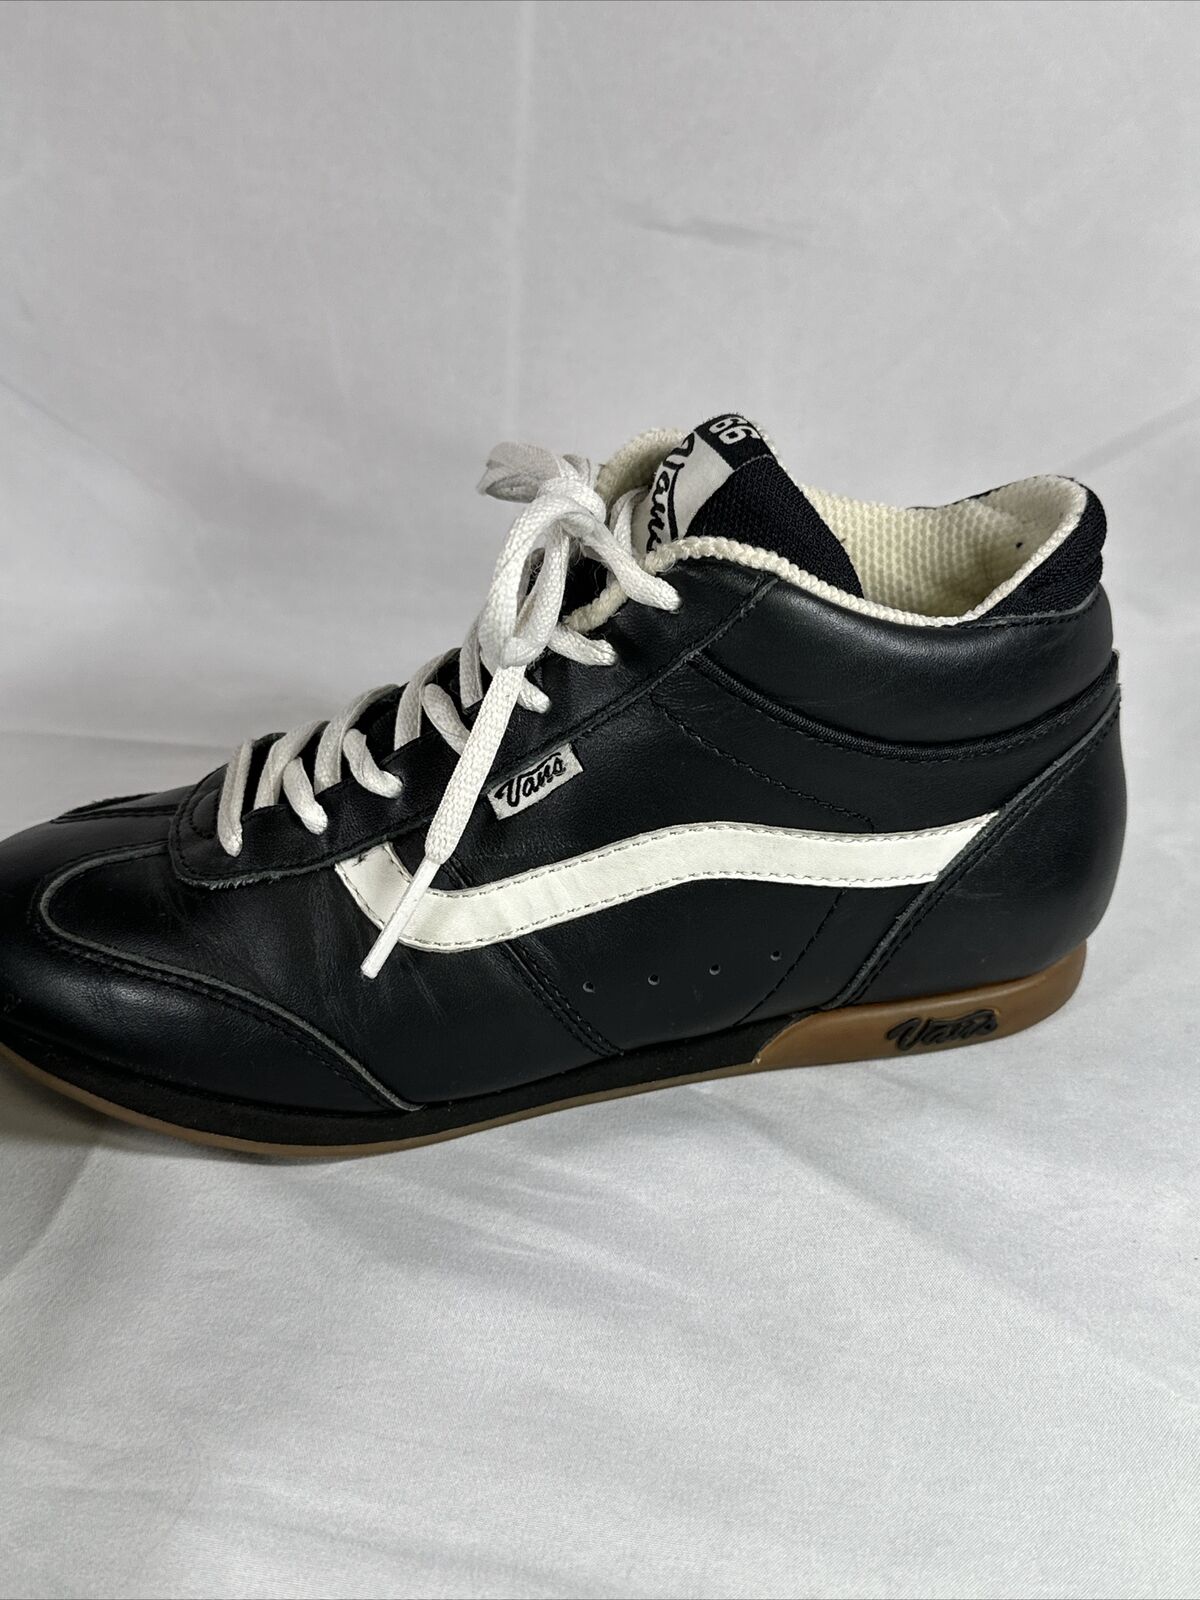 Vans MIYA Vintage Women’s Leather Sneakers Shoes … - image 6